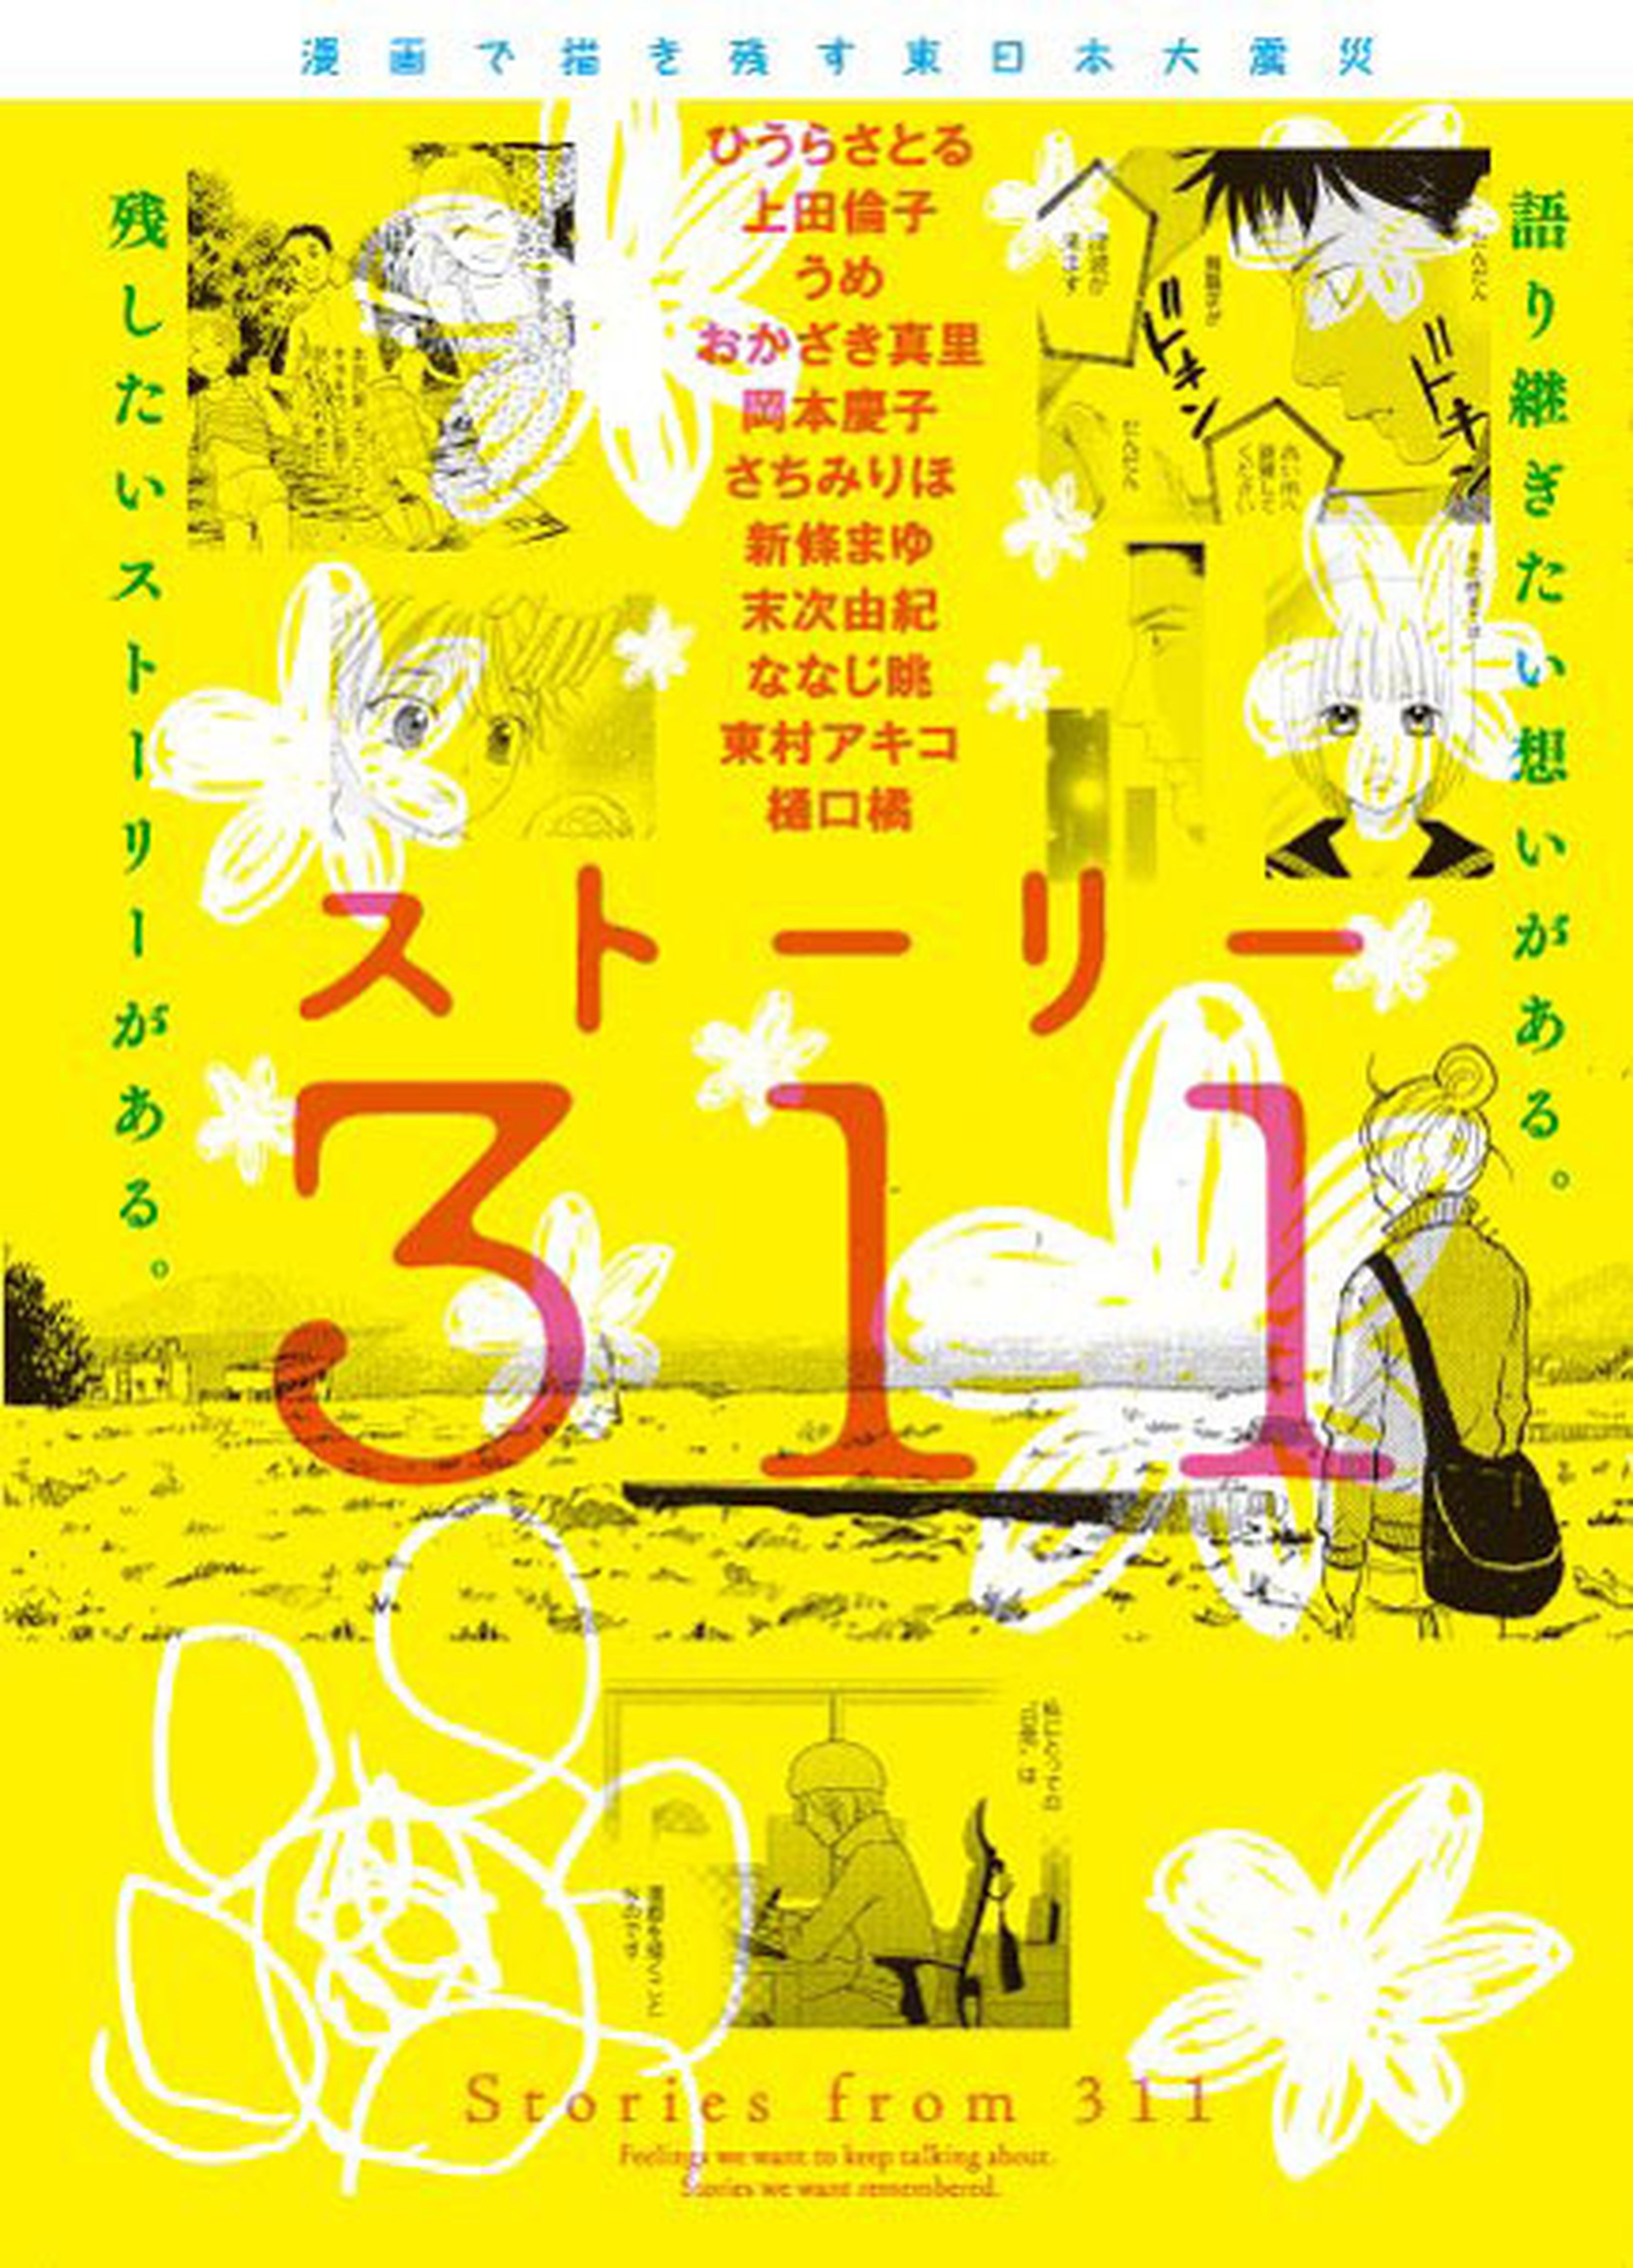 Llega a Japón el manga solidario Story 311